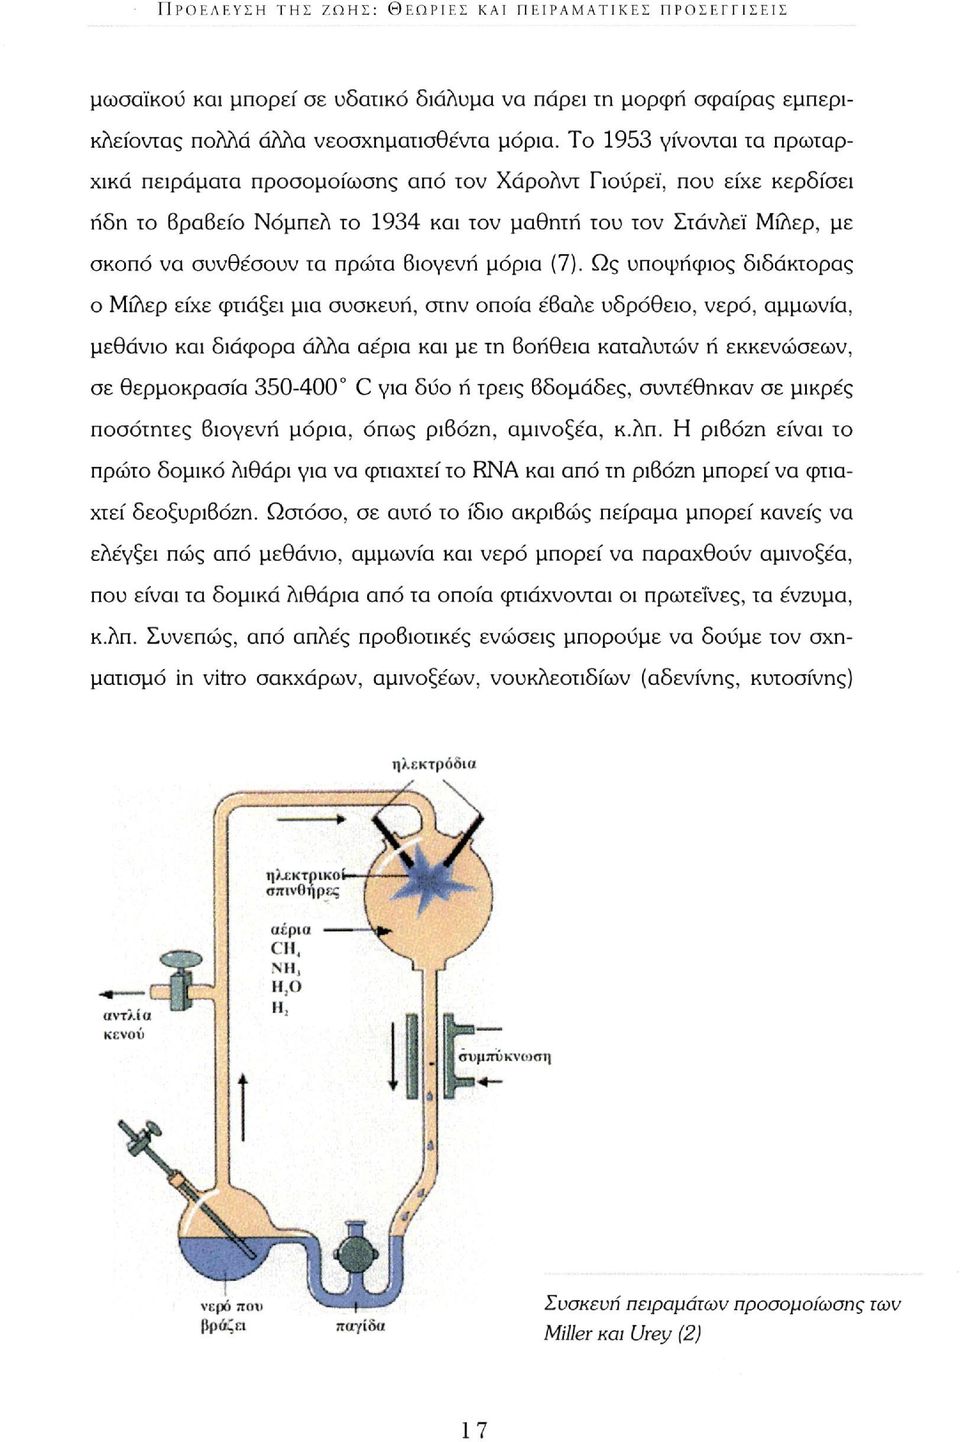 βιογενή μόρια (7).